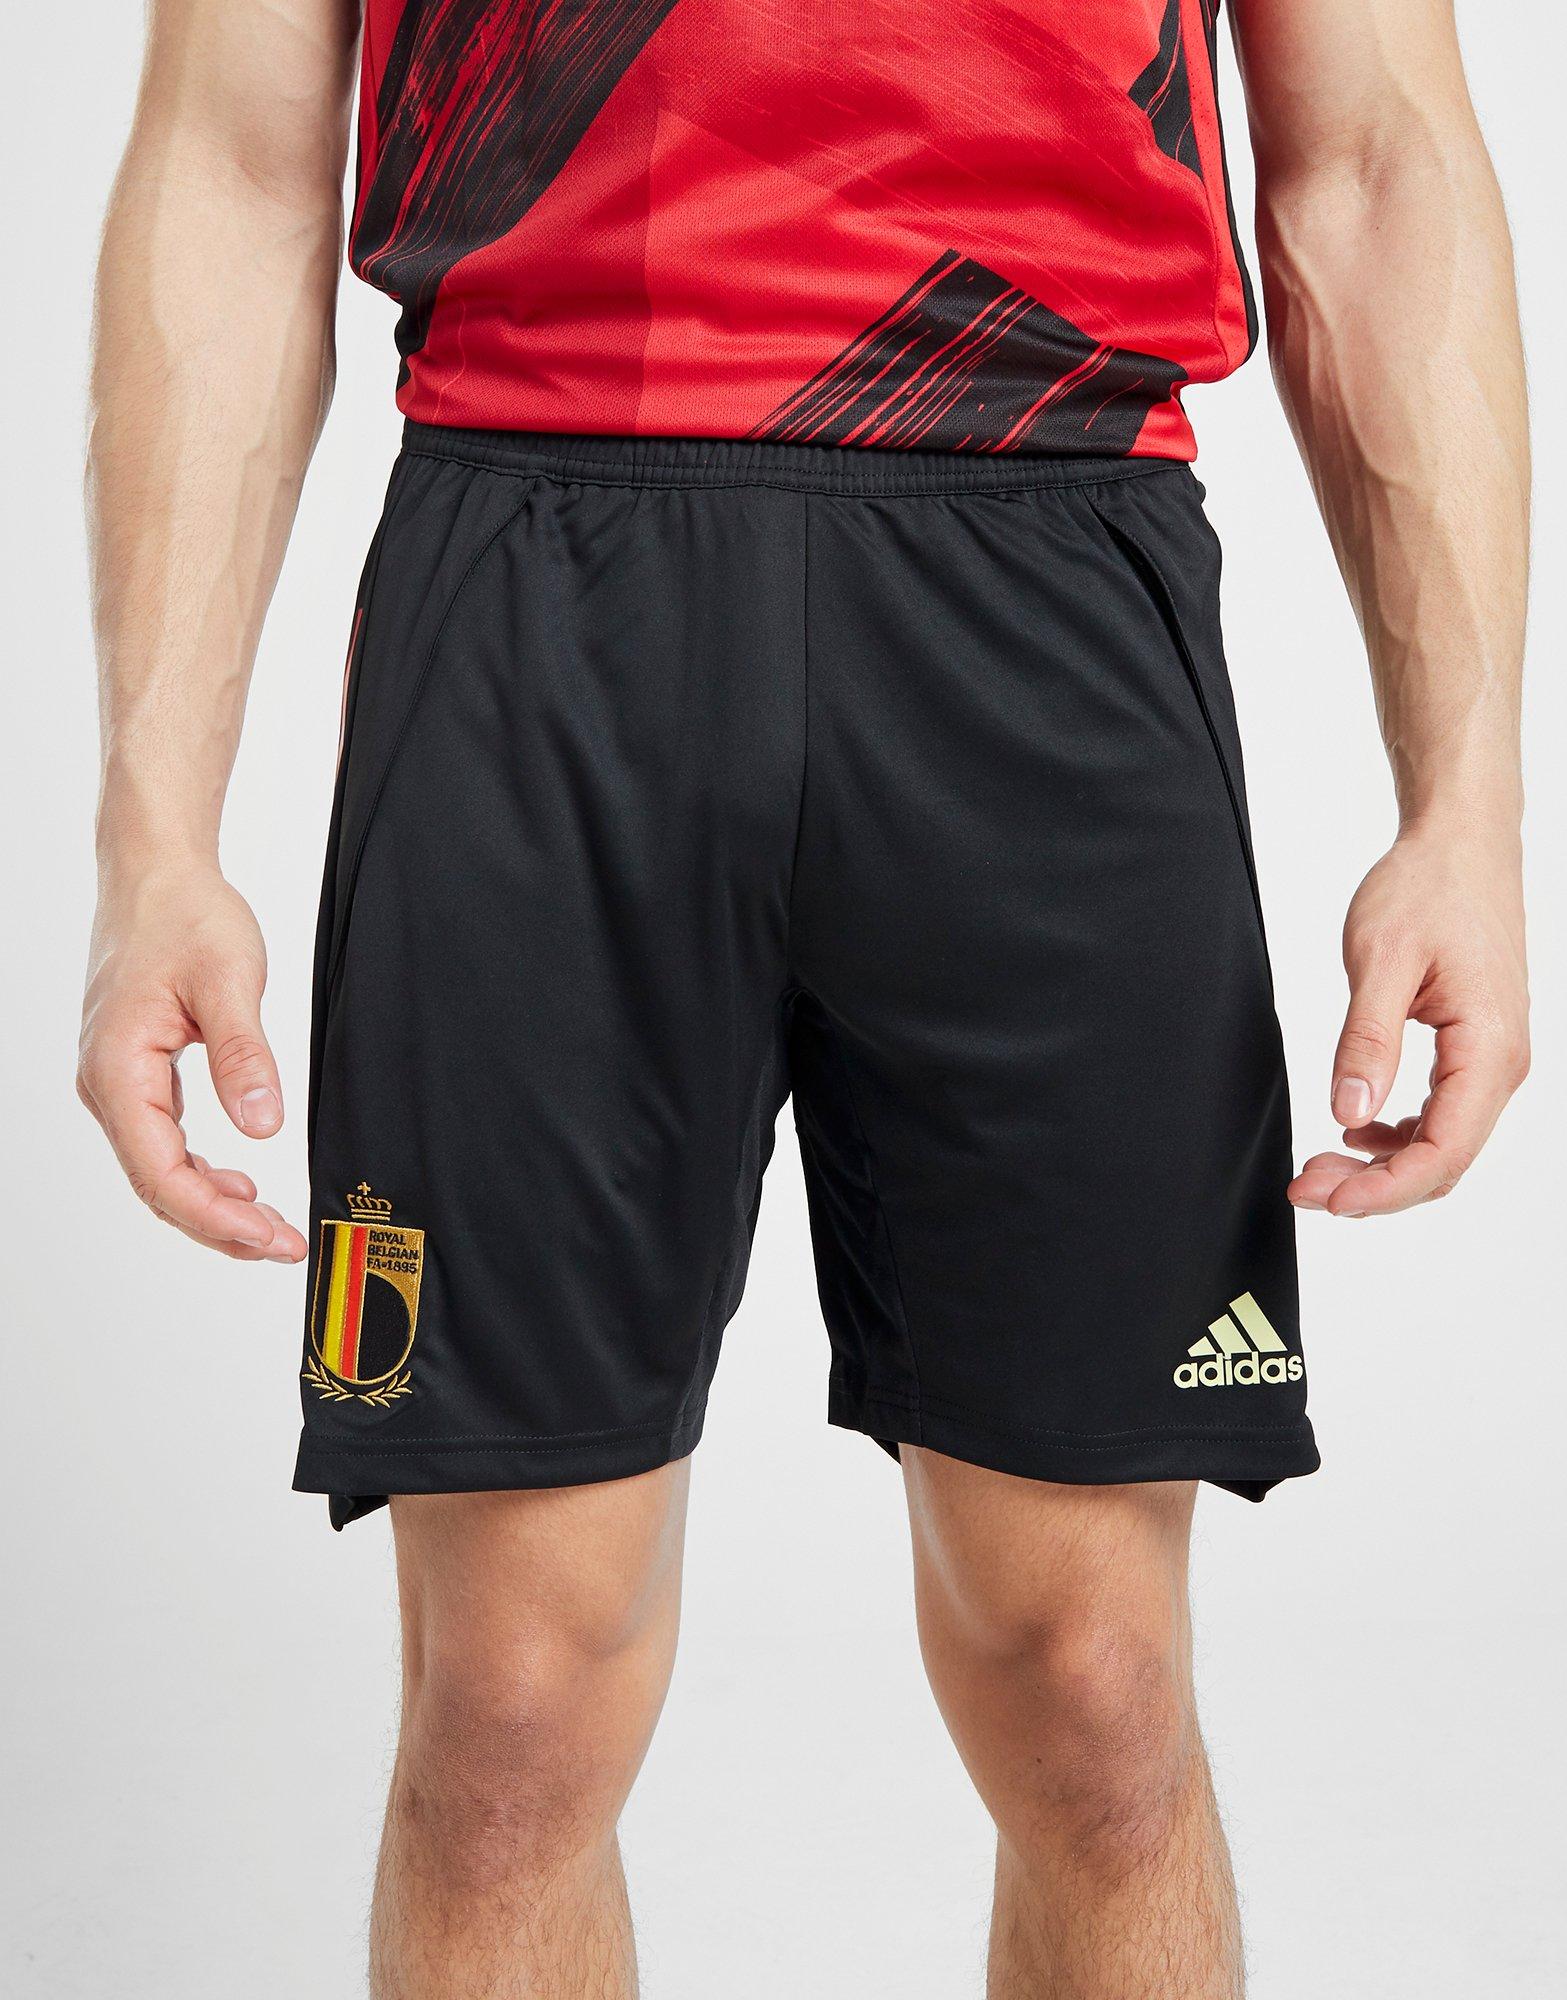 adidas Originals Belgium Training Shorts